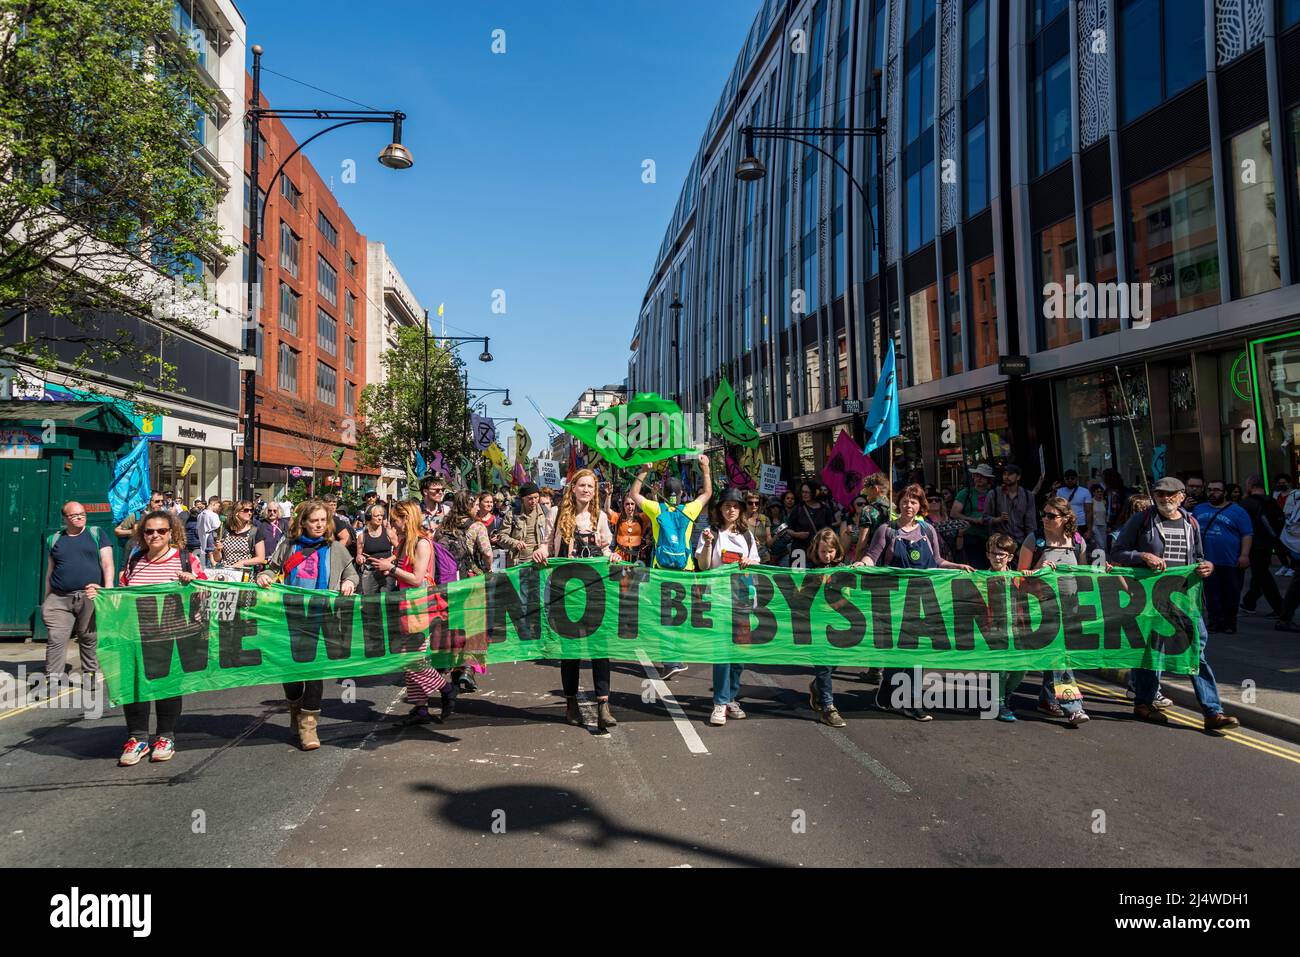 Nous ne serons pas des spectateurs, une manifestation de la rébellion contre l'extinction qui lutte pour la justice climatique, 16.04.2022, Londres, Angleterre, Royaume-Uni Banque D'Images